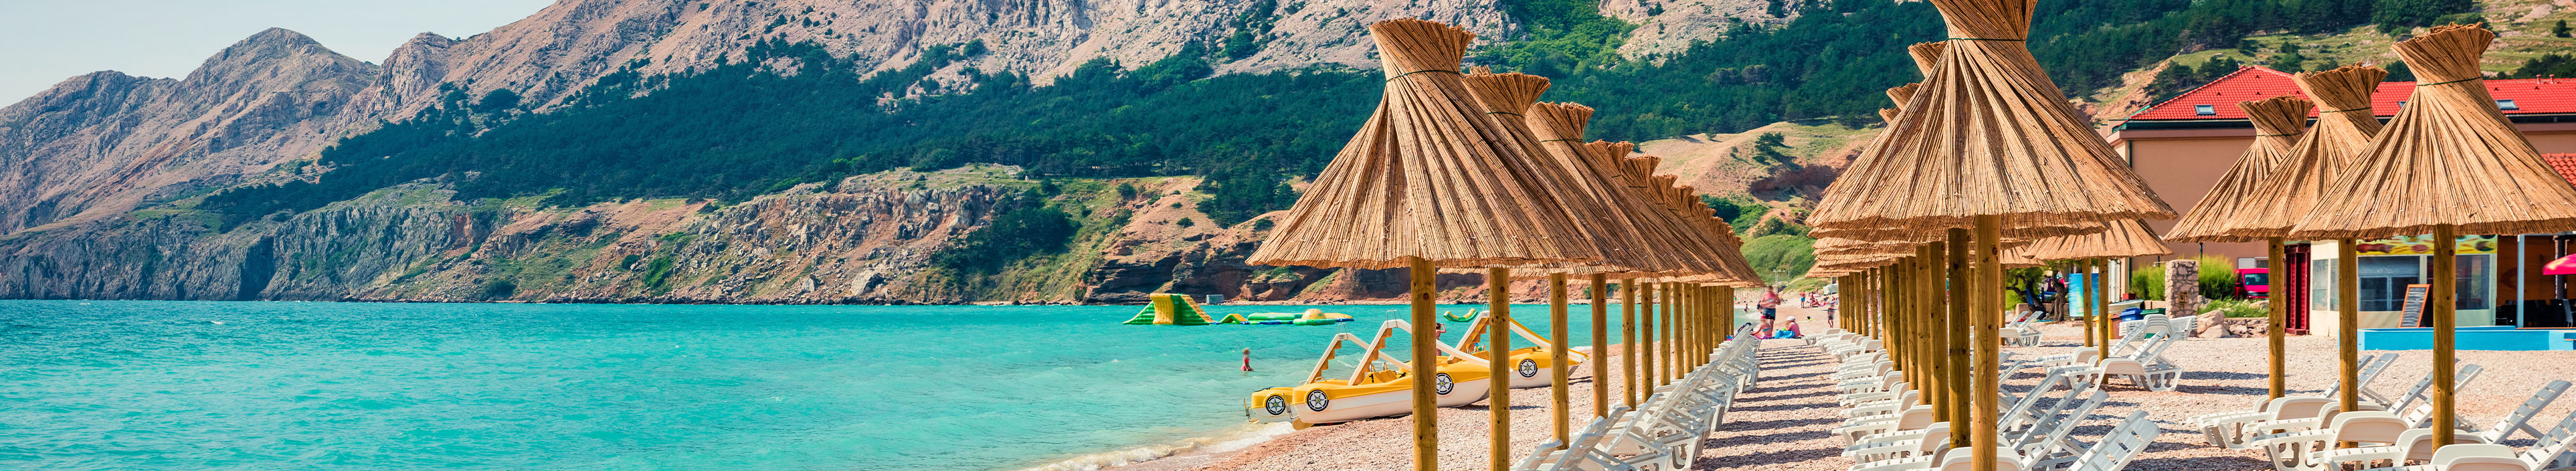 Liegen und Schrime an einem Strandabschnitt am Meer in Kroatien